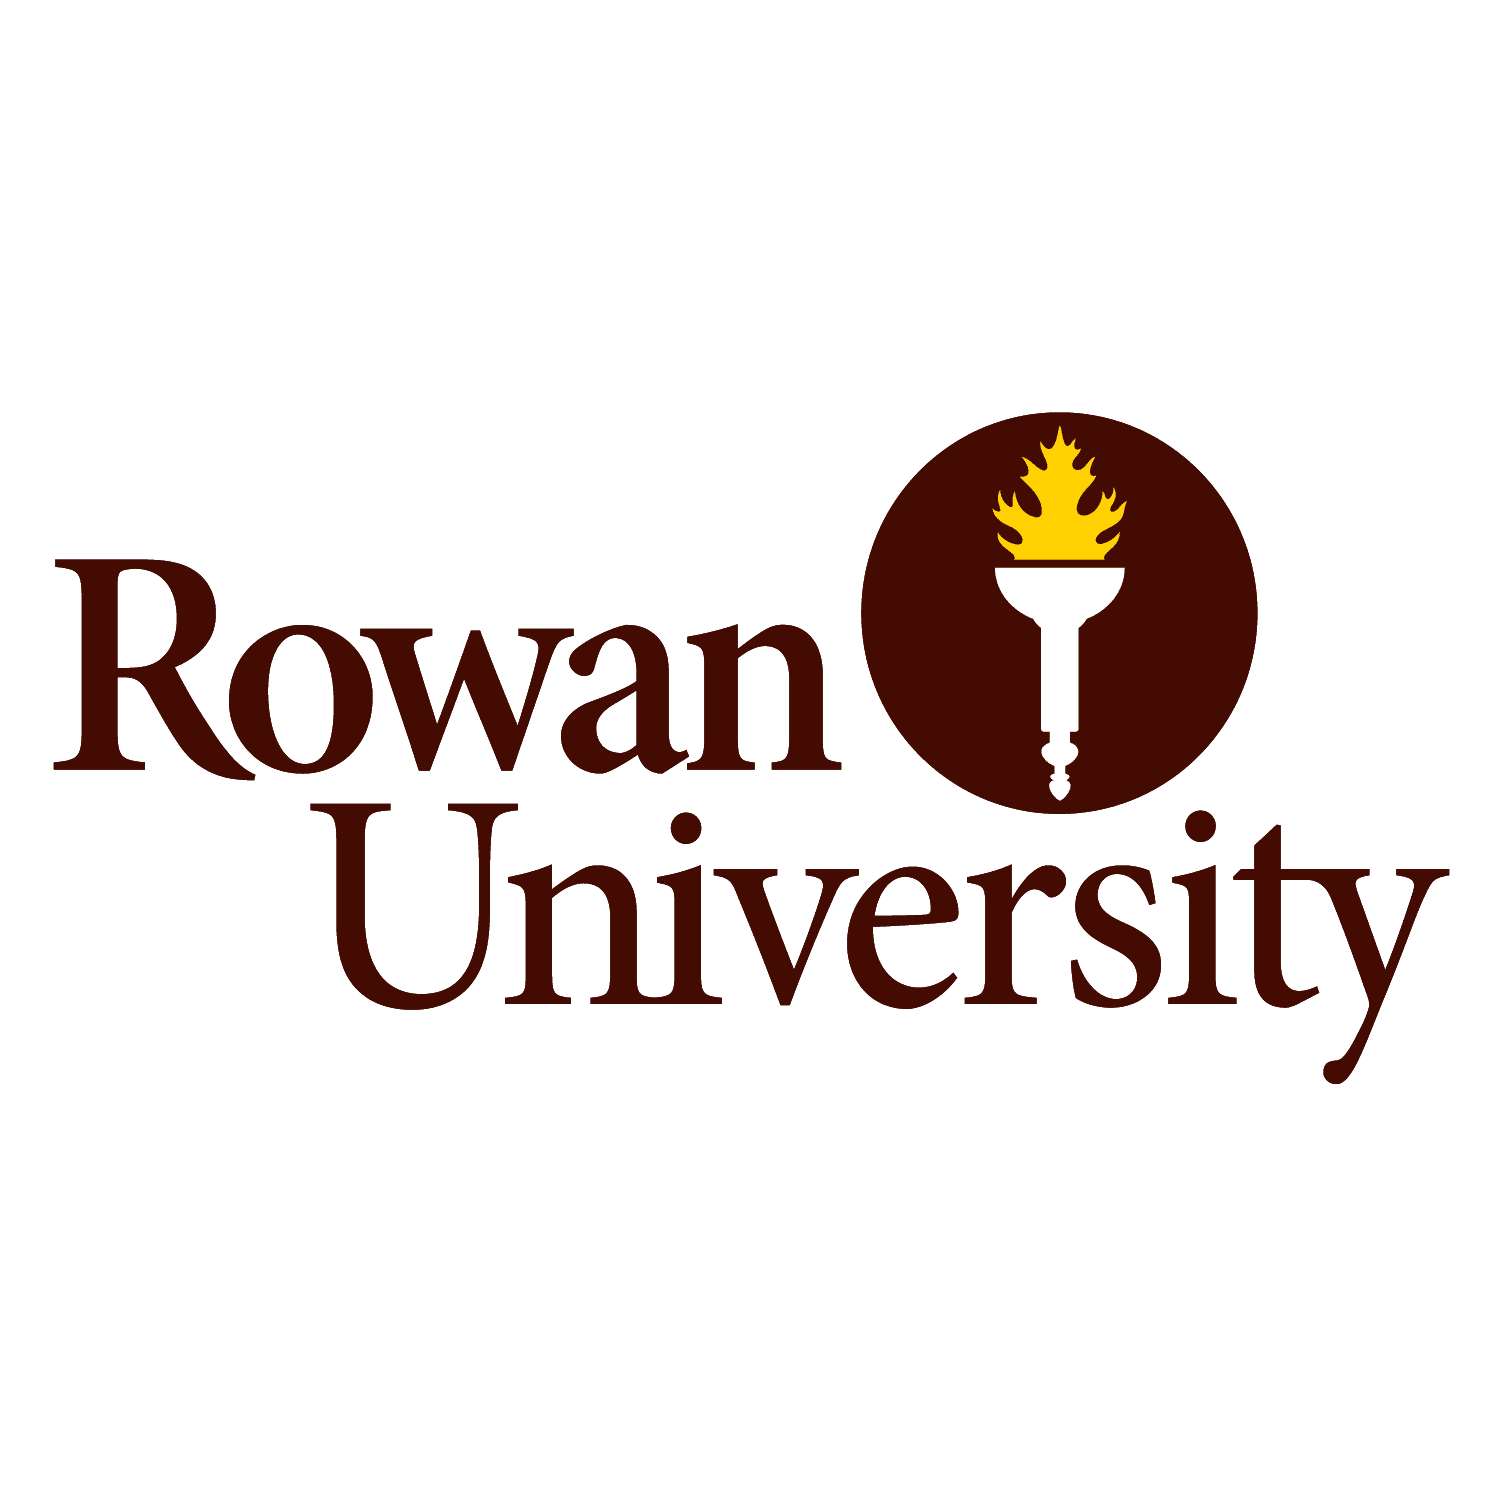 Rowan University wordmark